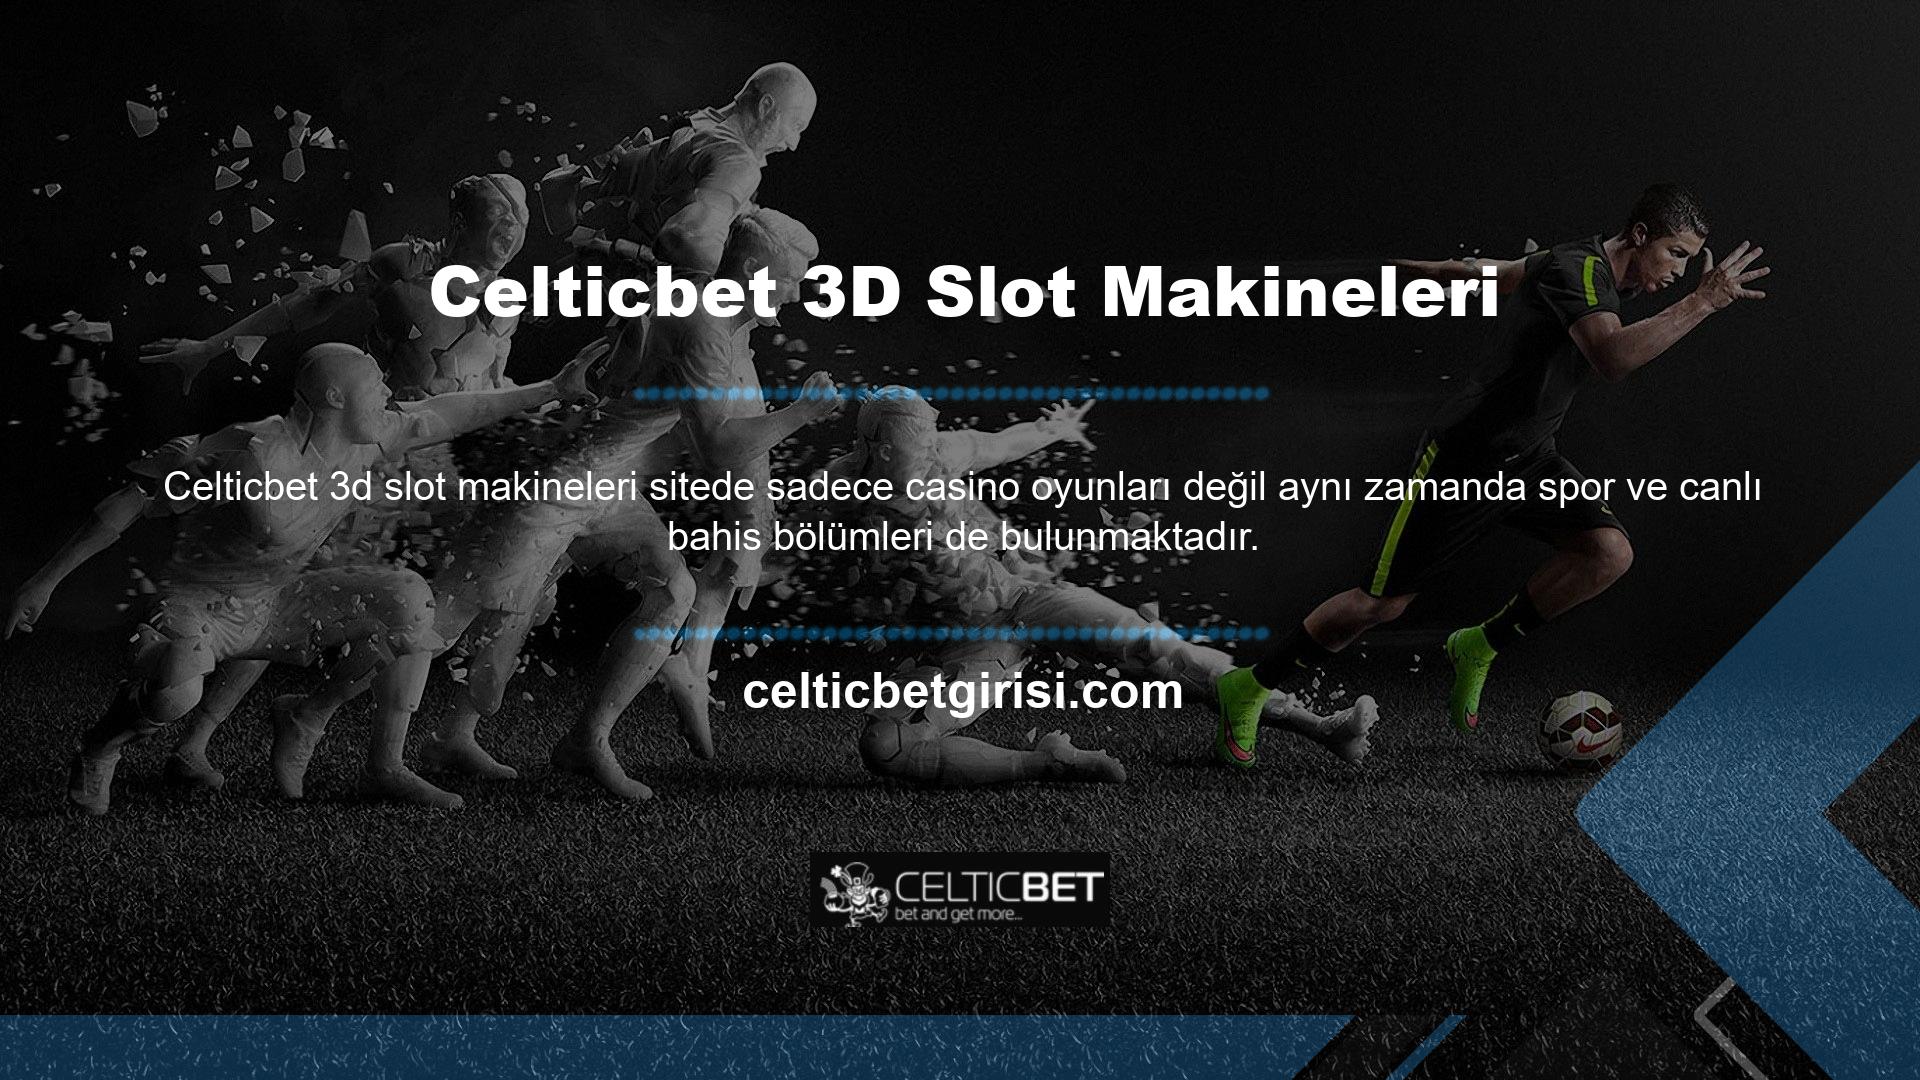 Celticbet 3D slot bölümü sitede incelemeye sunulan ilk merkezlerden biridir